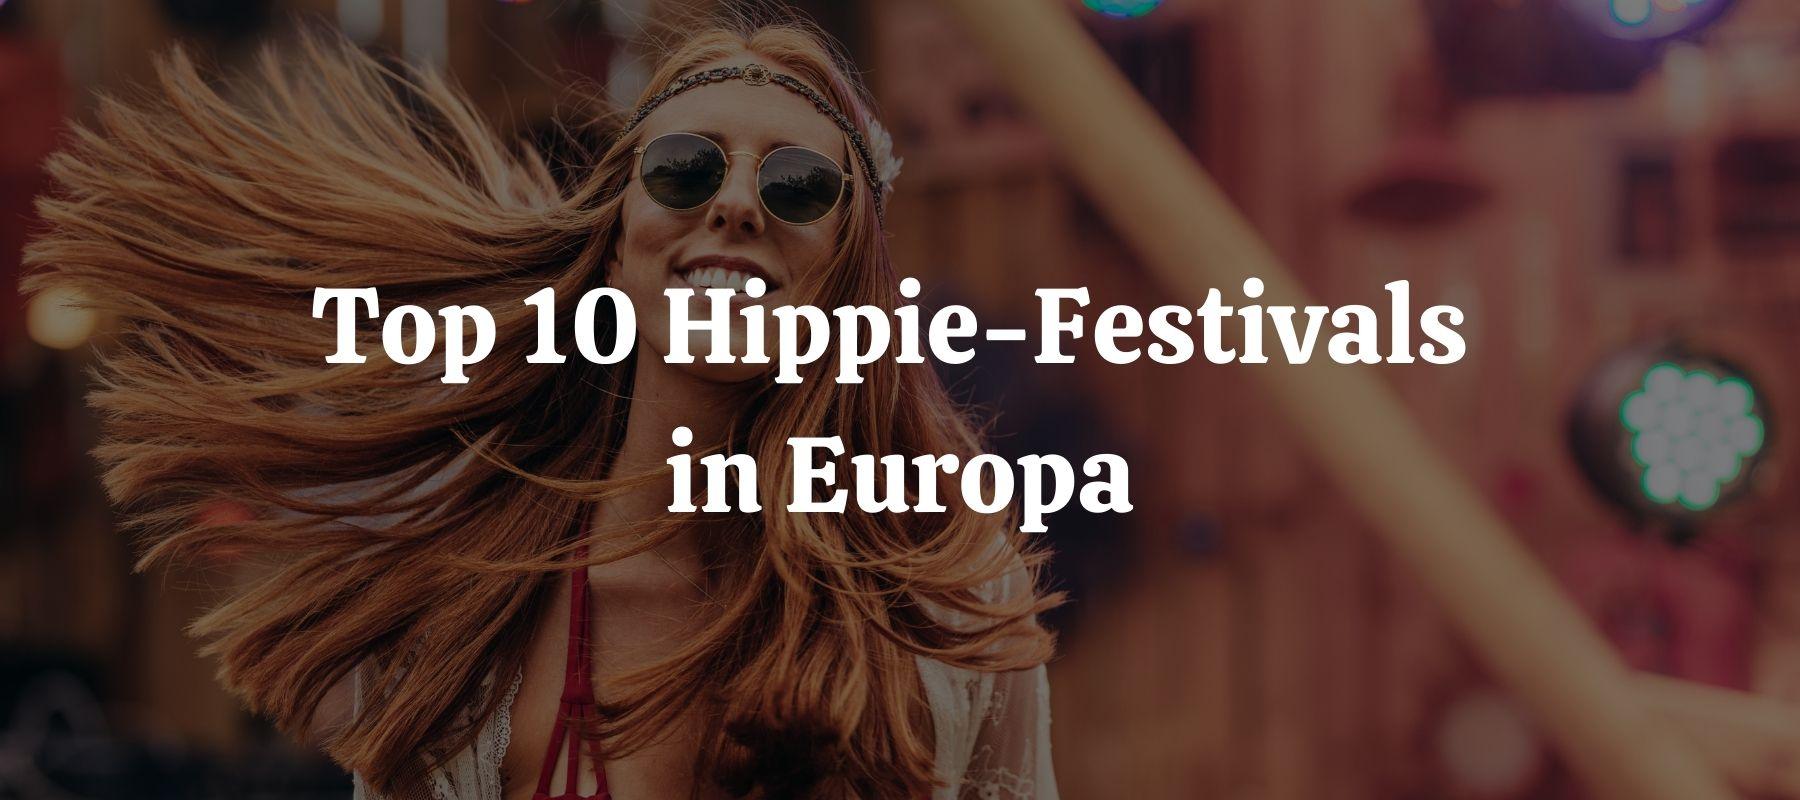 Top 10 Hippie-Festivals in Europa